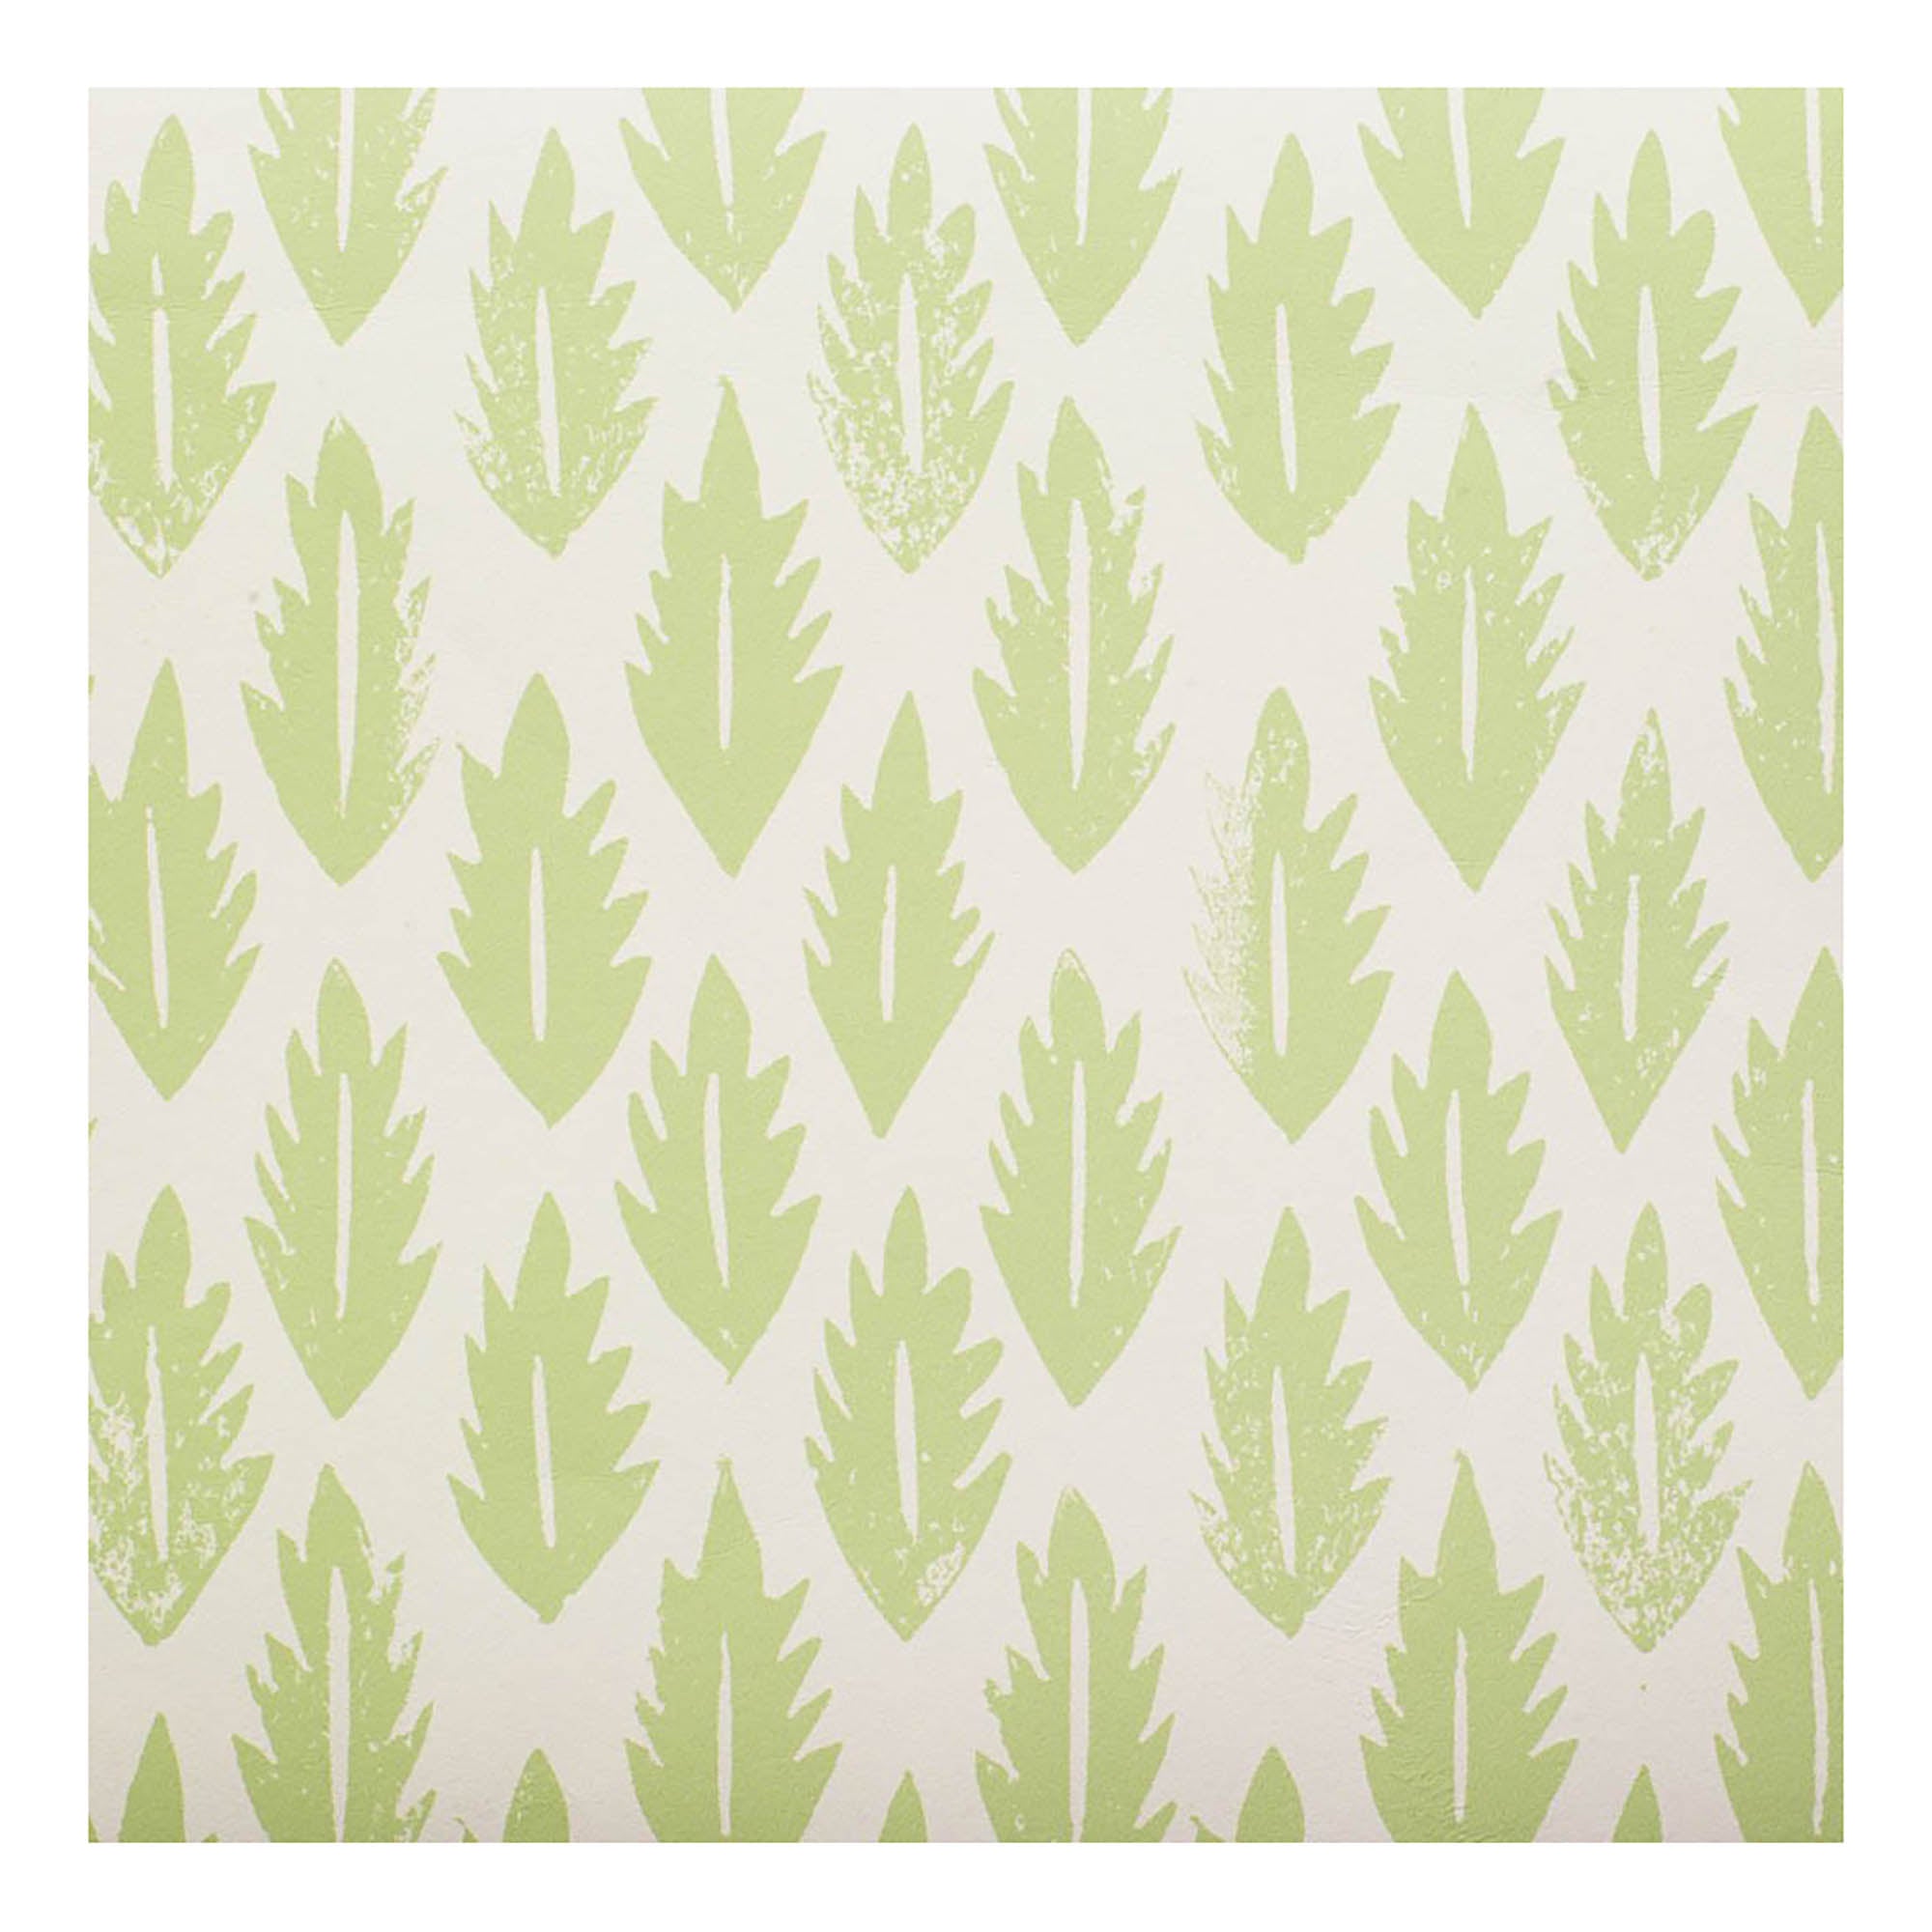 Leaf Wallpaper Grass Green